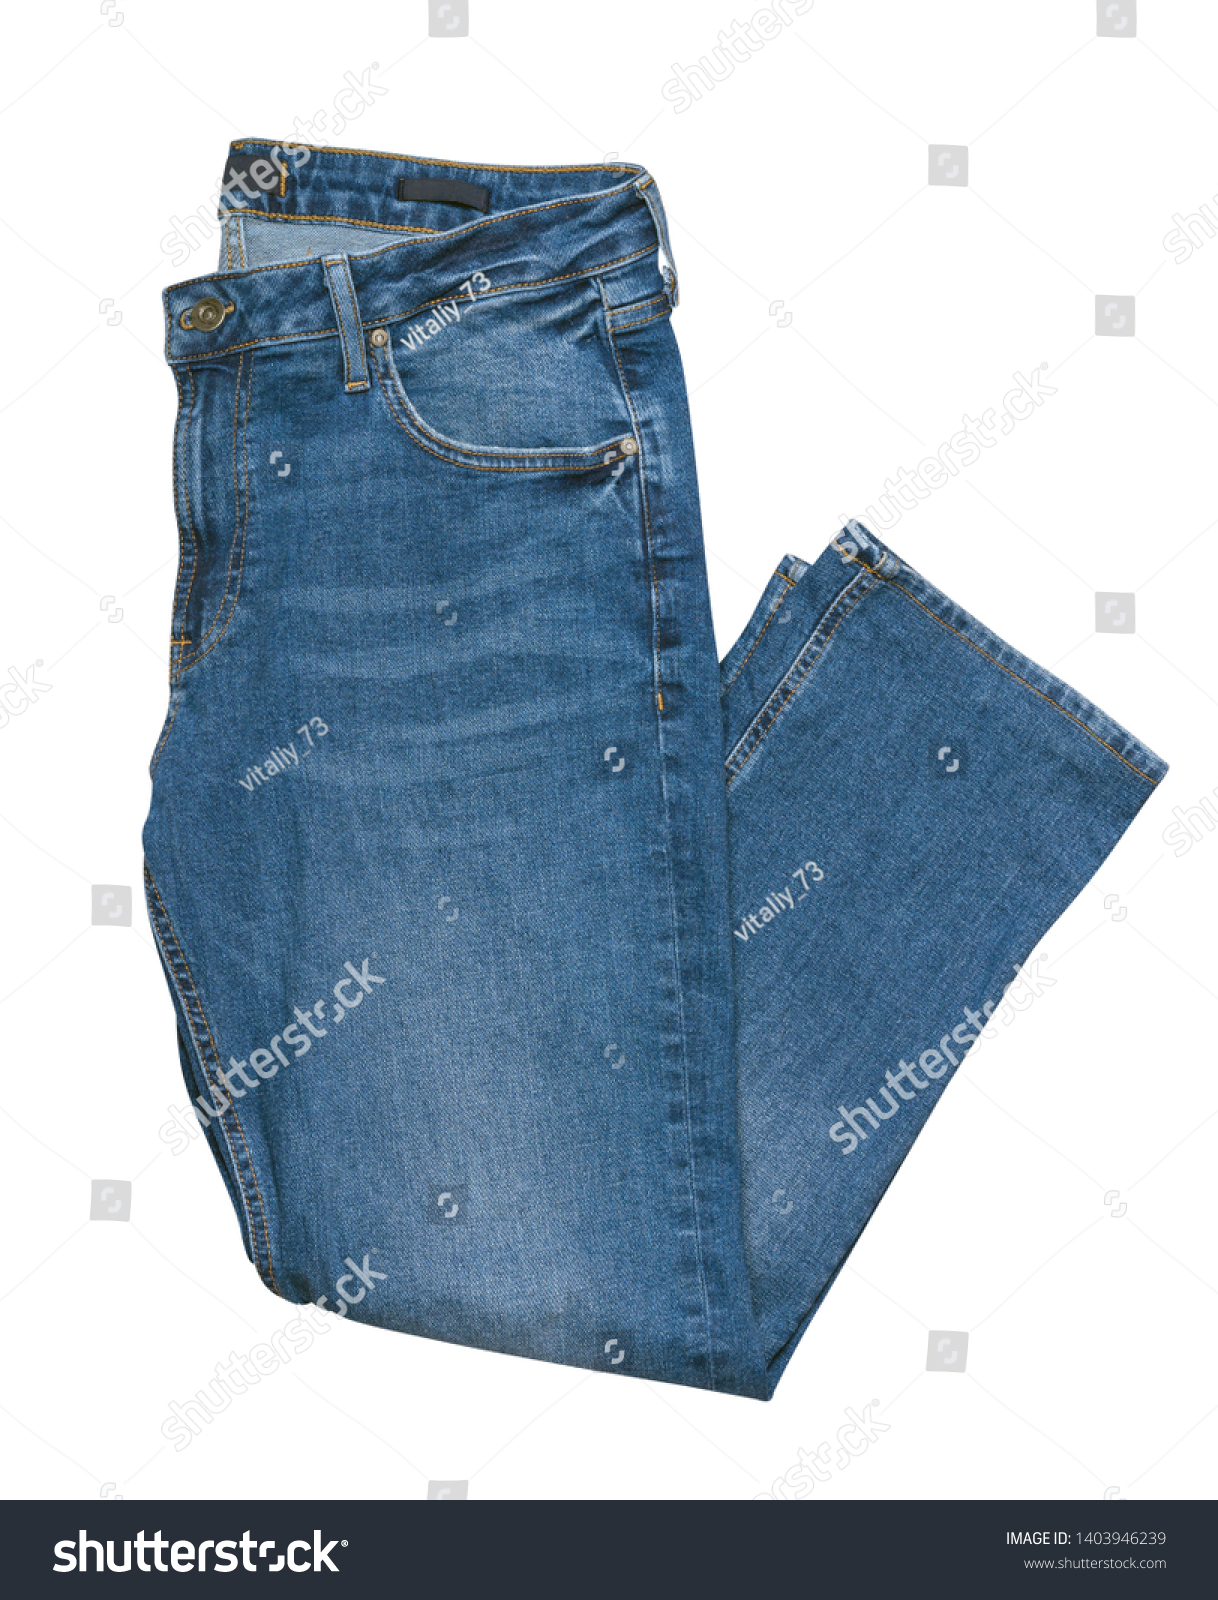 Blue Jeans Isolated On White Backgroundbeautiful Stock Photo 1403946239 ...